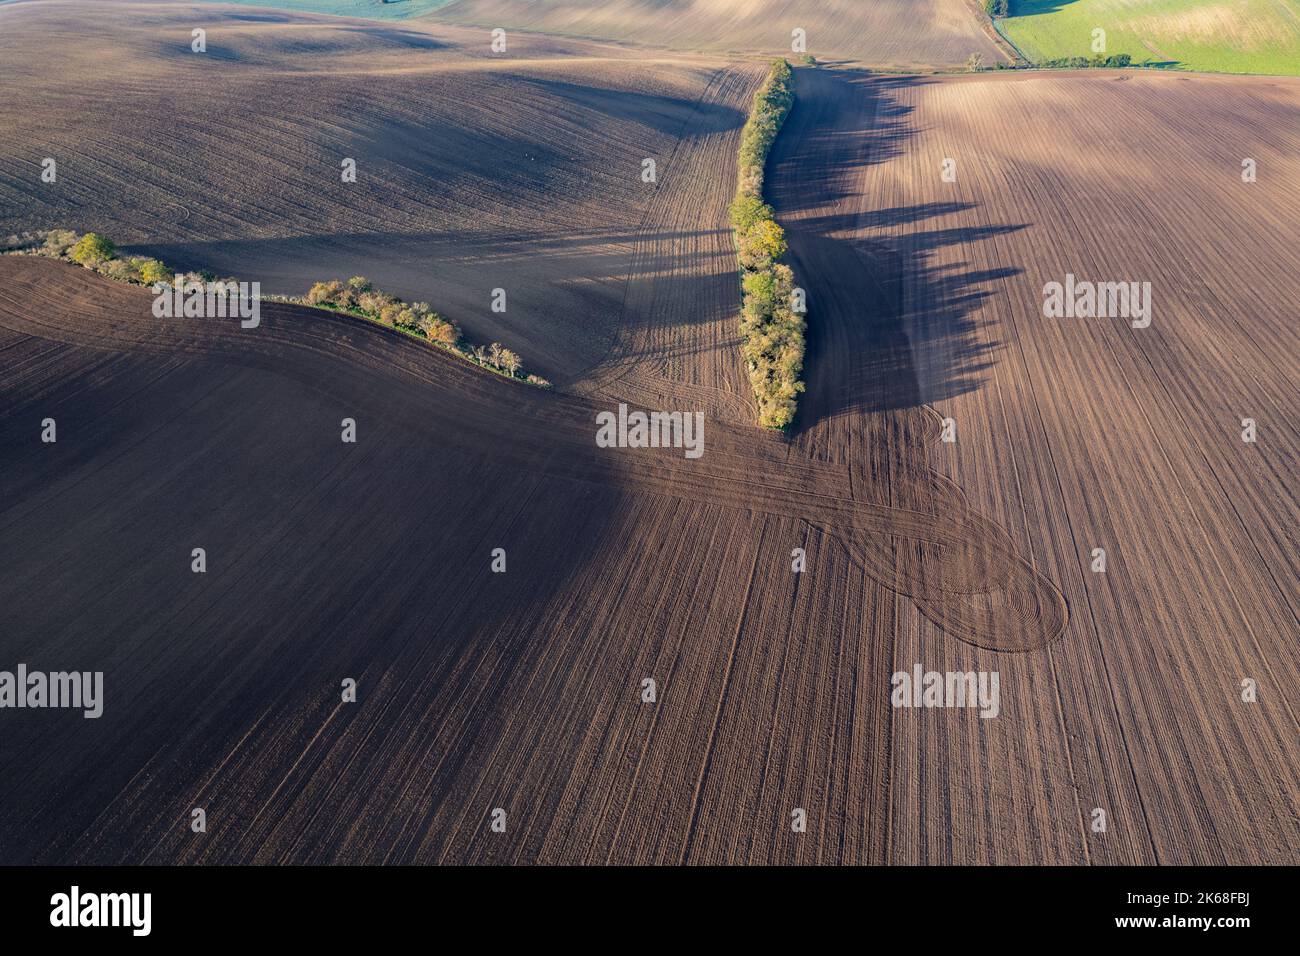 Terres agricoles et arbres d'automne en Moravie tchèque vus d'en haut, motifs et lignes sur le terrain, photographie de drone Banque D'Images